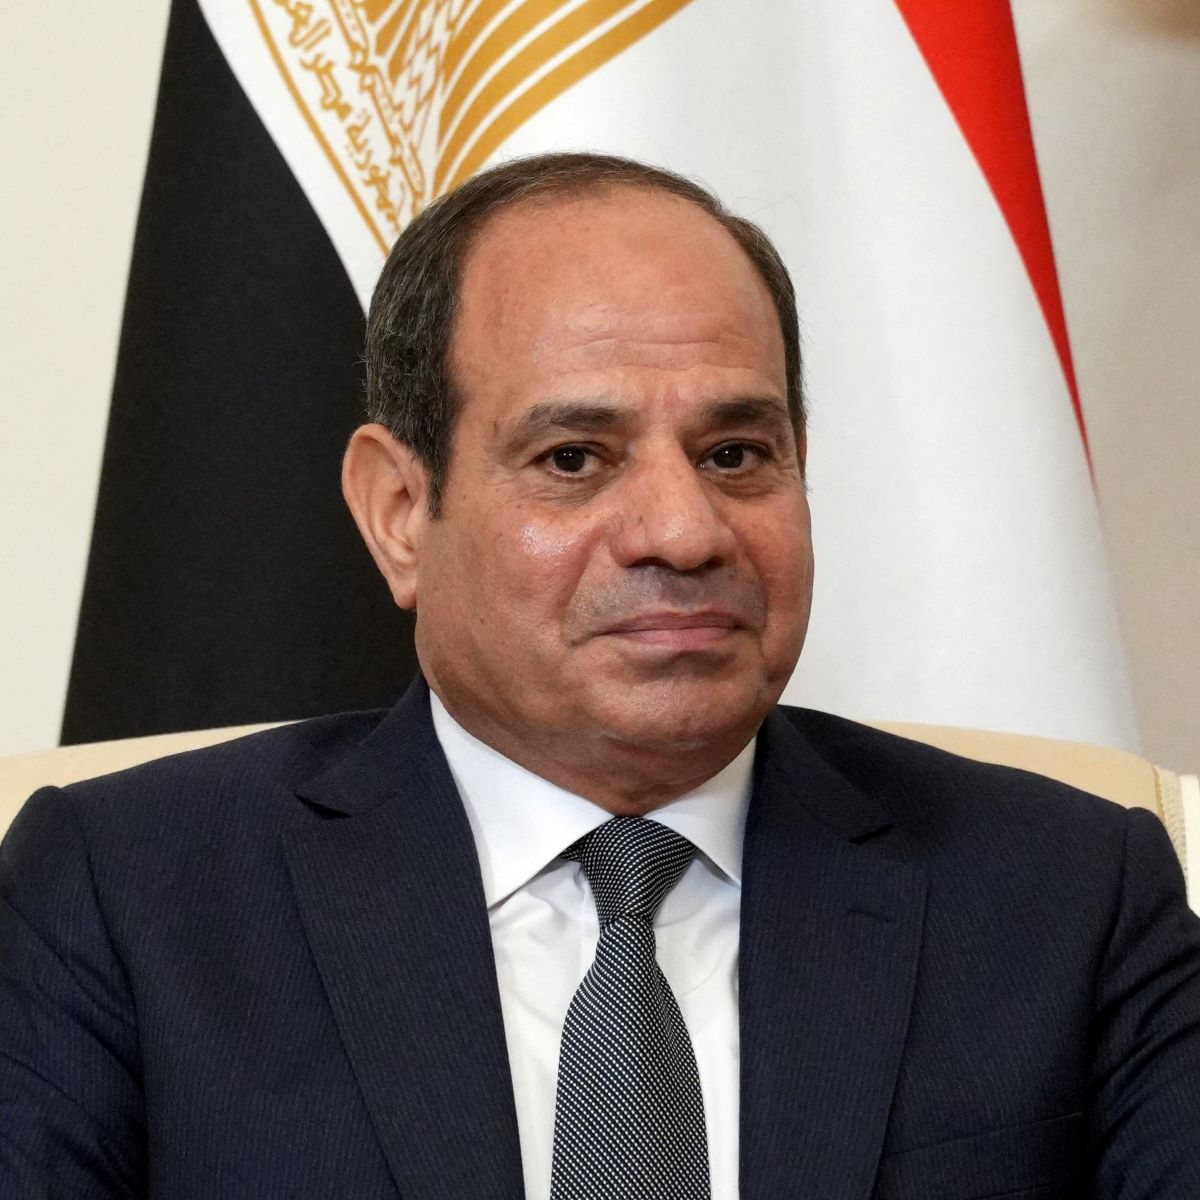  presidente do Egito, Abdel Fattah al-Sisi 